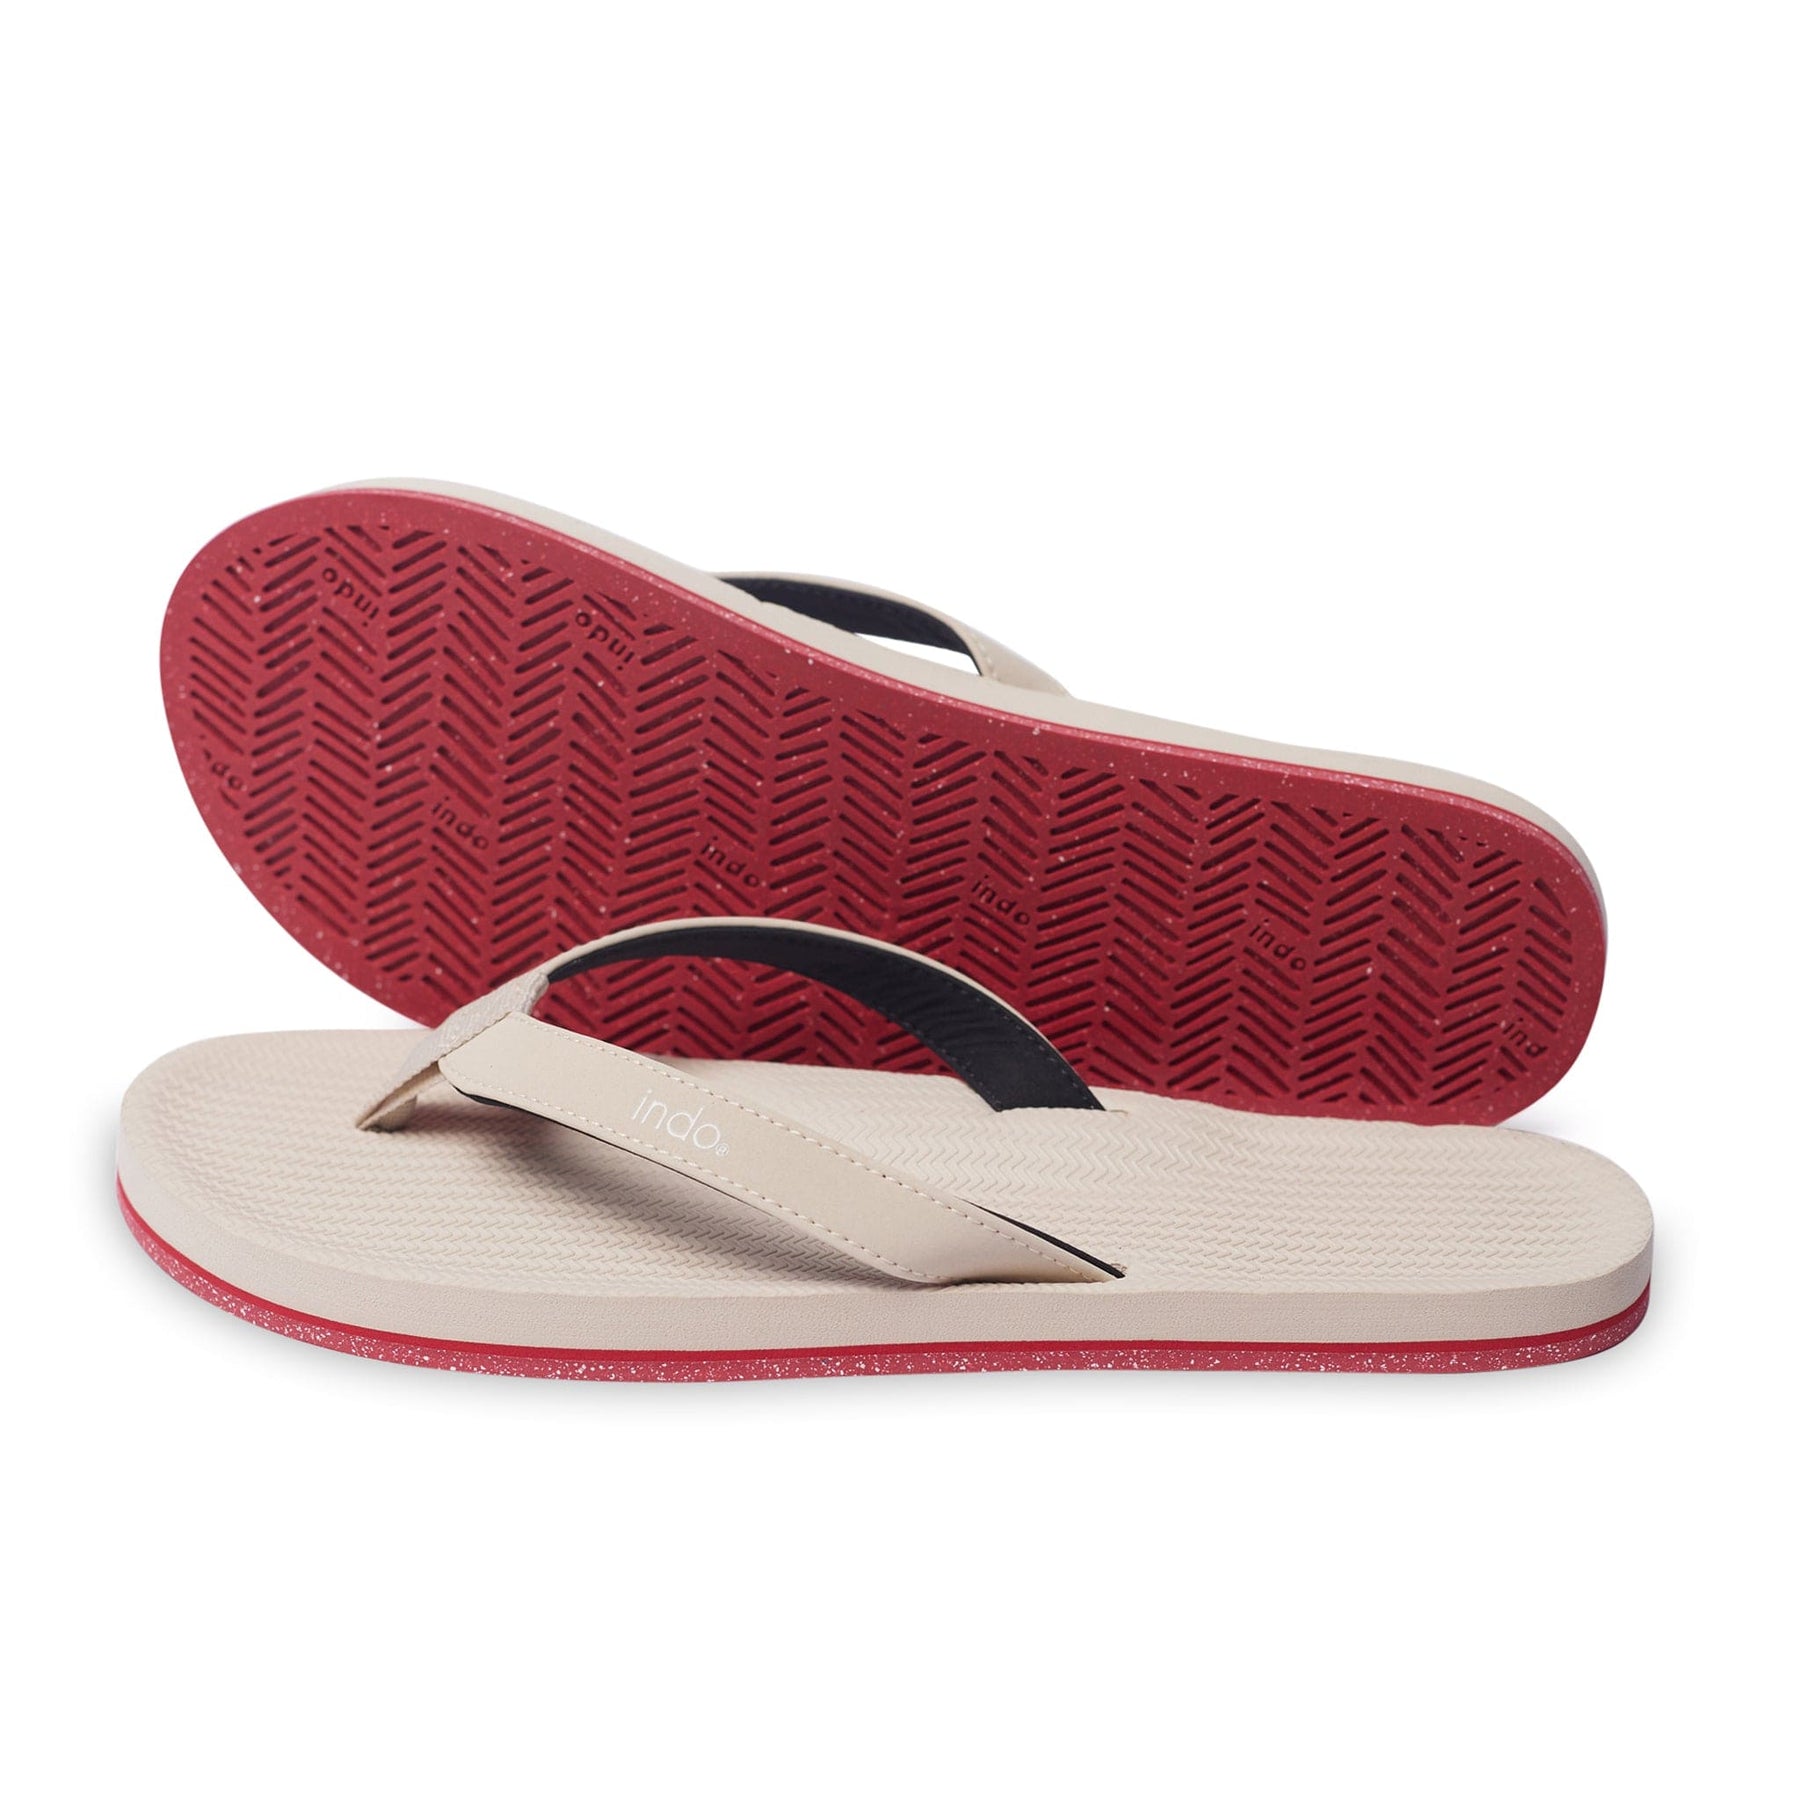 Women’s Flip Flops Sneaker Sole - Red Sole/Sea Salt